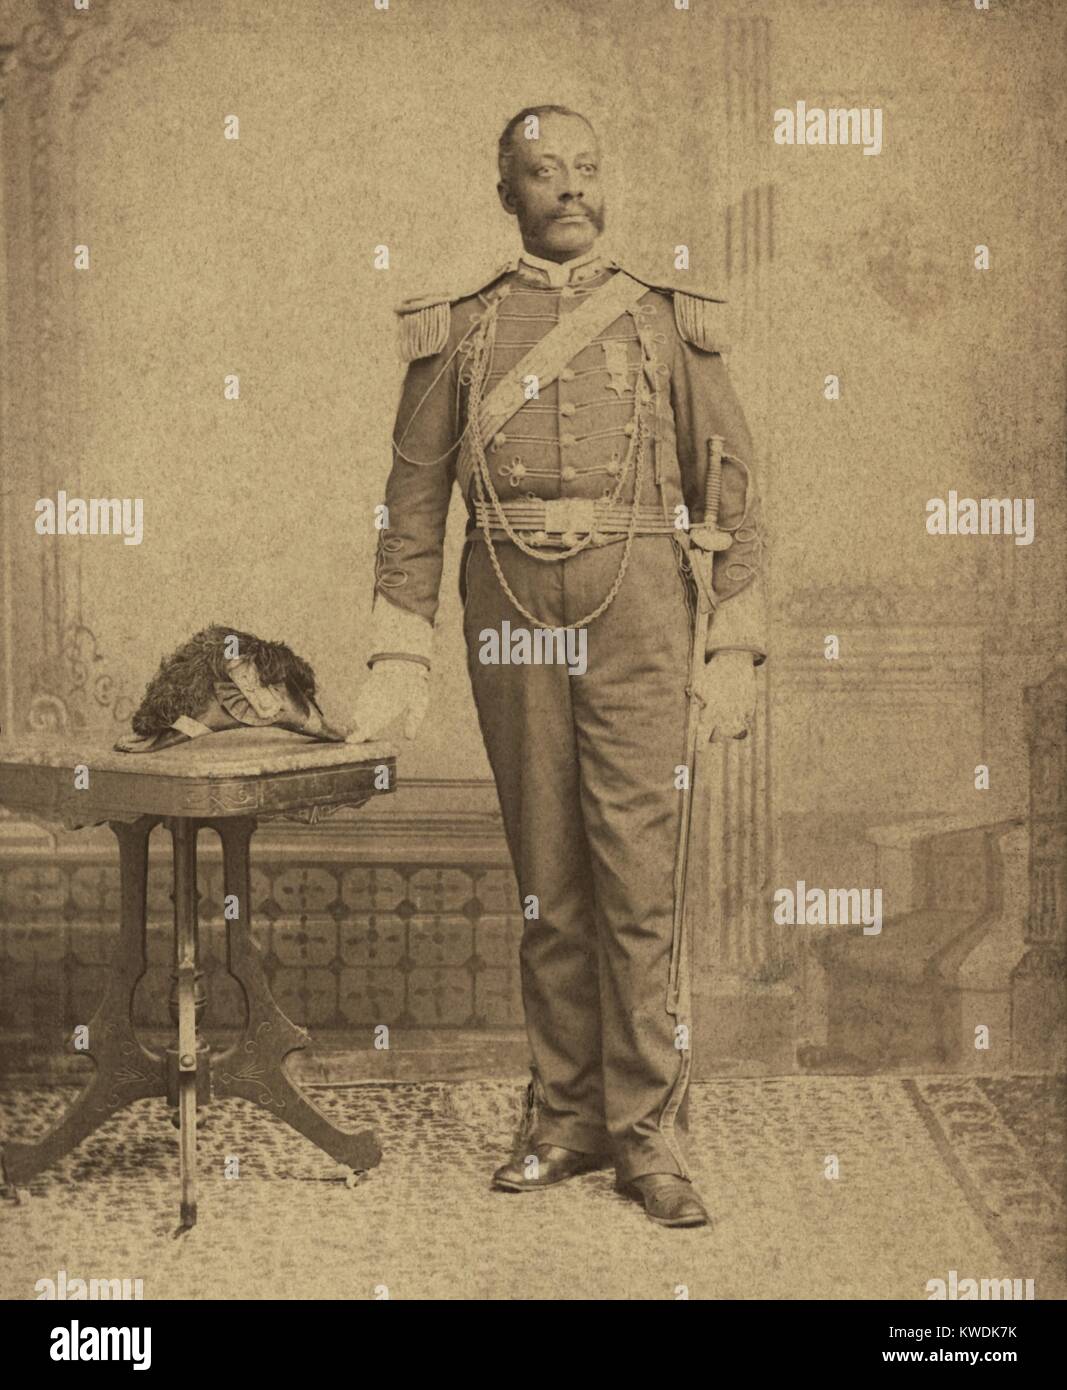 African soldato americano, indossando GAR (grande esercito della Repubblica) medaglia. Foto di Giovanni nipote, a Washington, D.C. fotografo attivo dal 1880-1895 (BSLOC 2017 20 103) Foto Stock